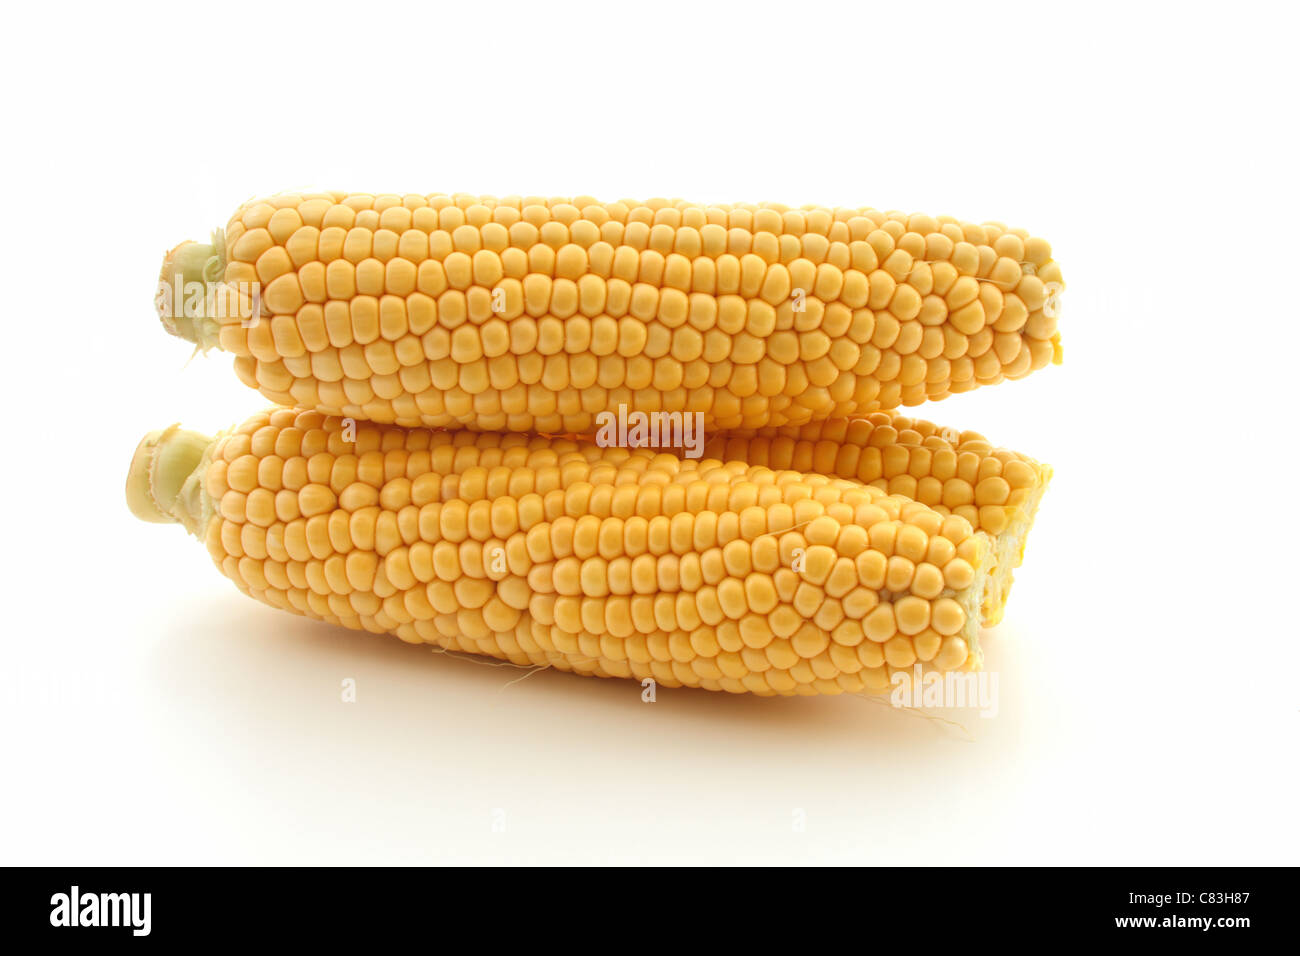 Le maïs en épi,empilés, sur un fond blanc Banque D'Images